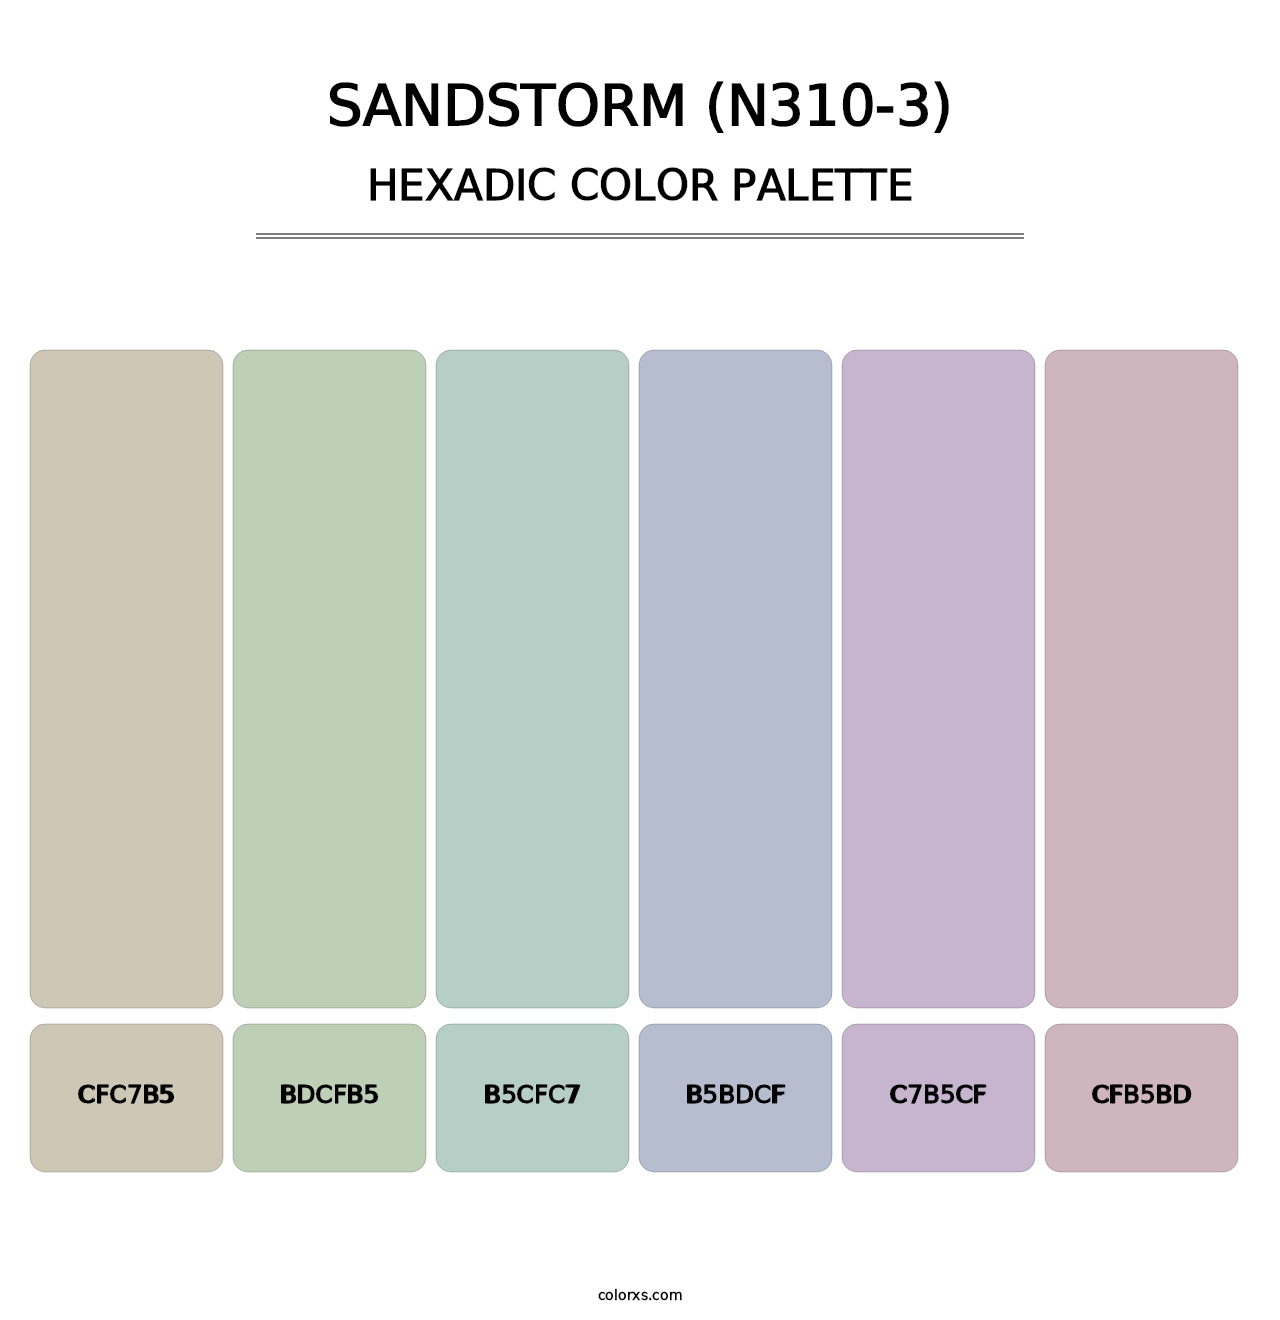 Sandstorm (N310-3) - Hexadic Color Palette